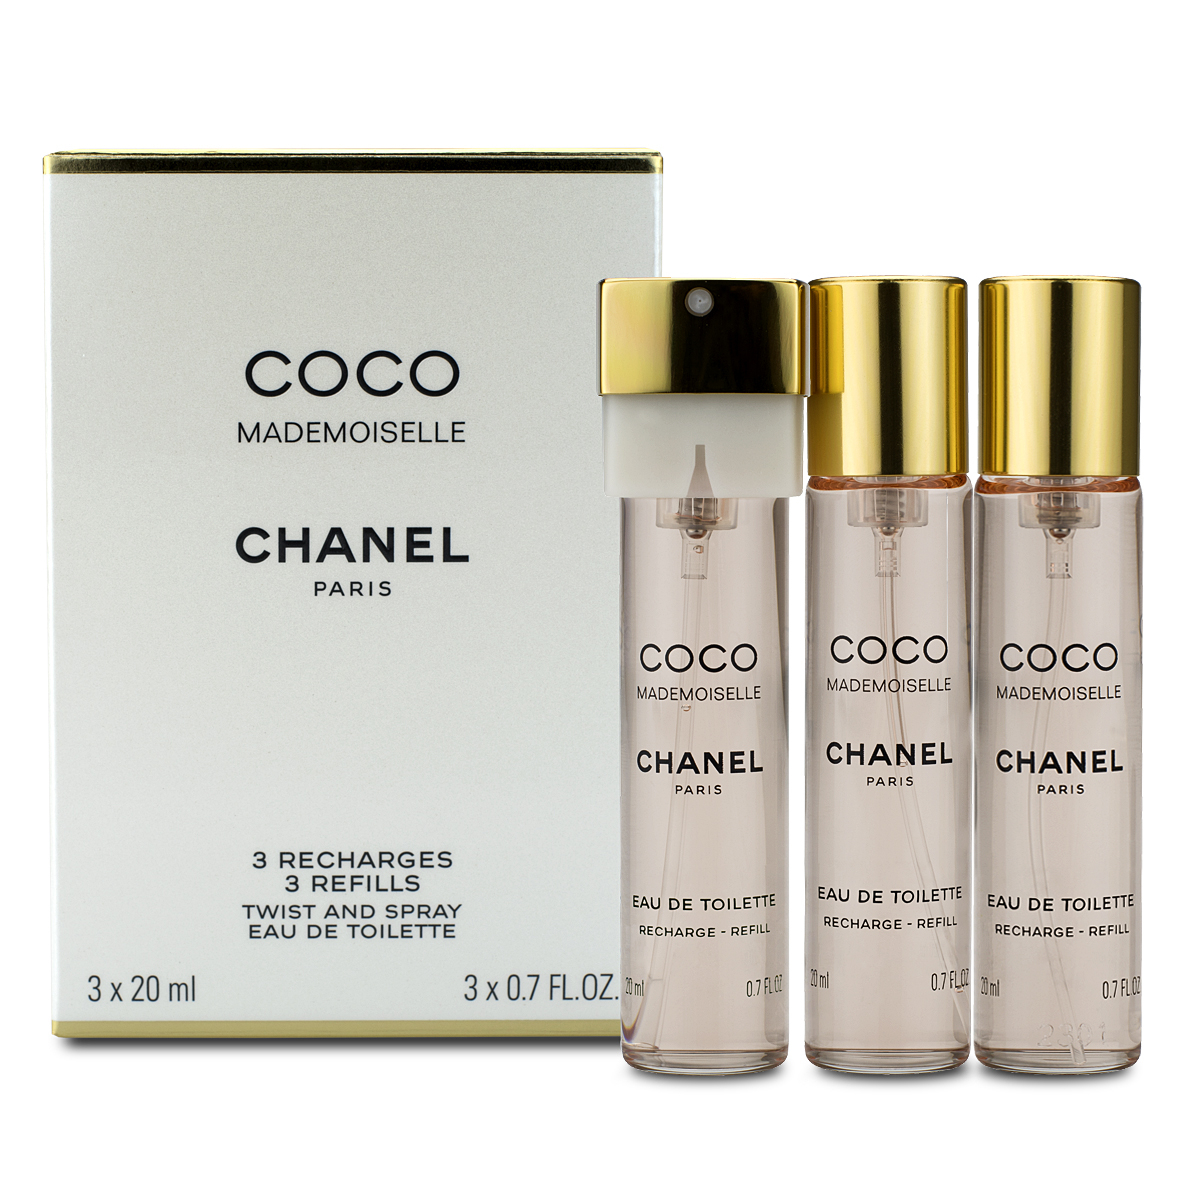 Chanel Coco Mademoiselle Eau de Toilette Twist & Spray 3 X 20ml Refills